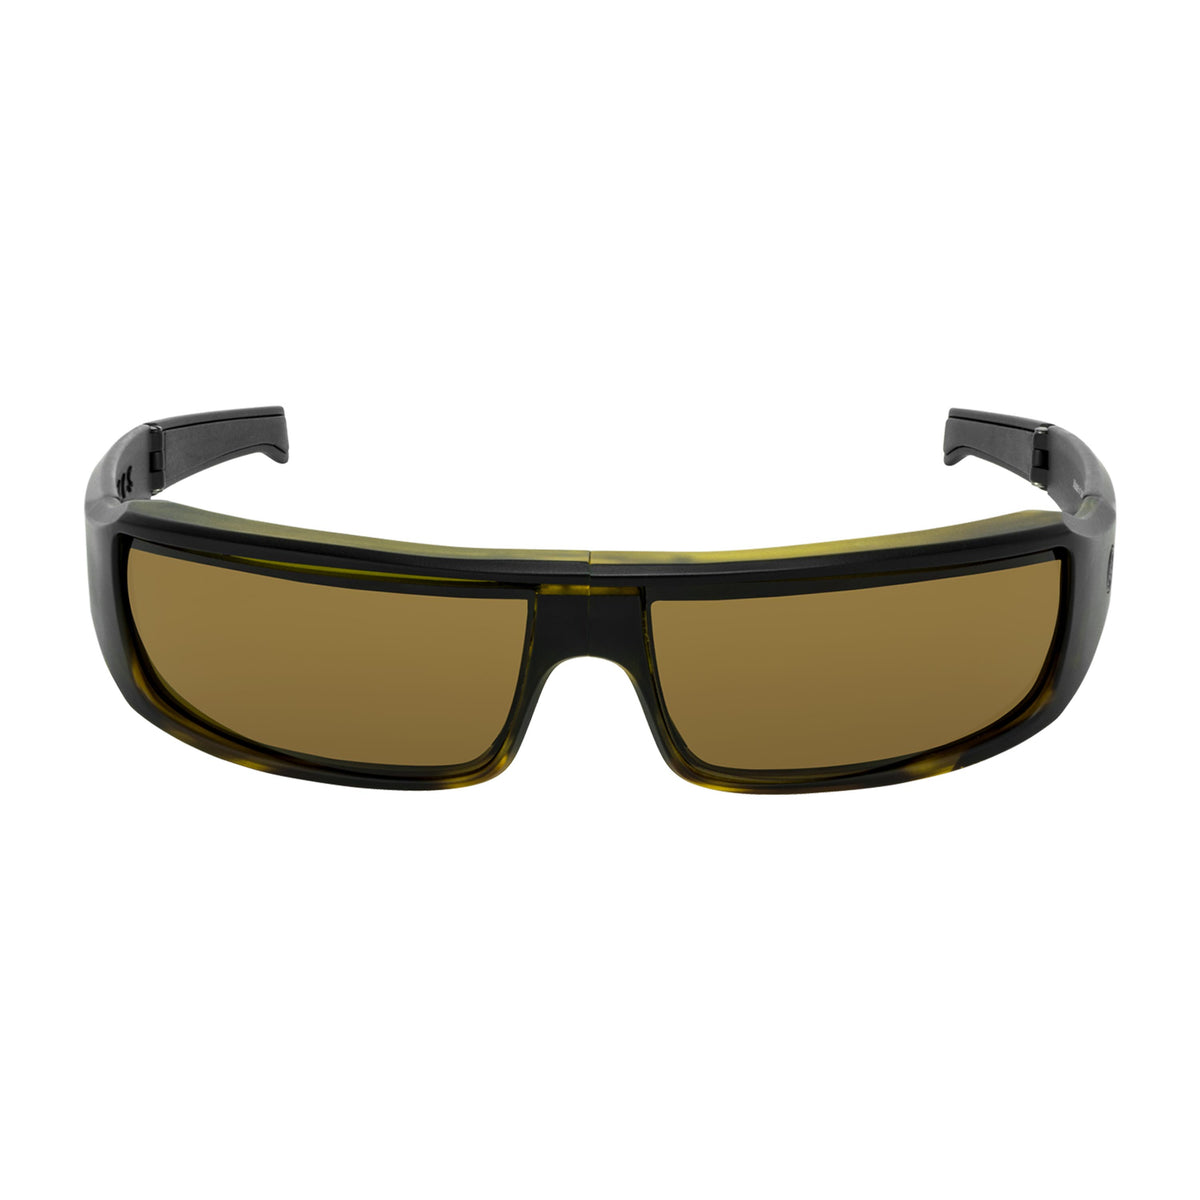 Popticals, Premium Compact Sunglasses, PopSign, 010020-AUNP, Polarized Sunglasses, Matte Black/Tortoise Frame, Brown Lenses, Front View